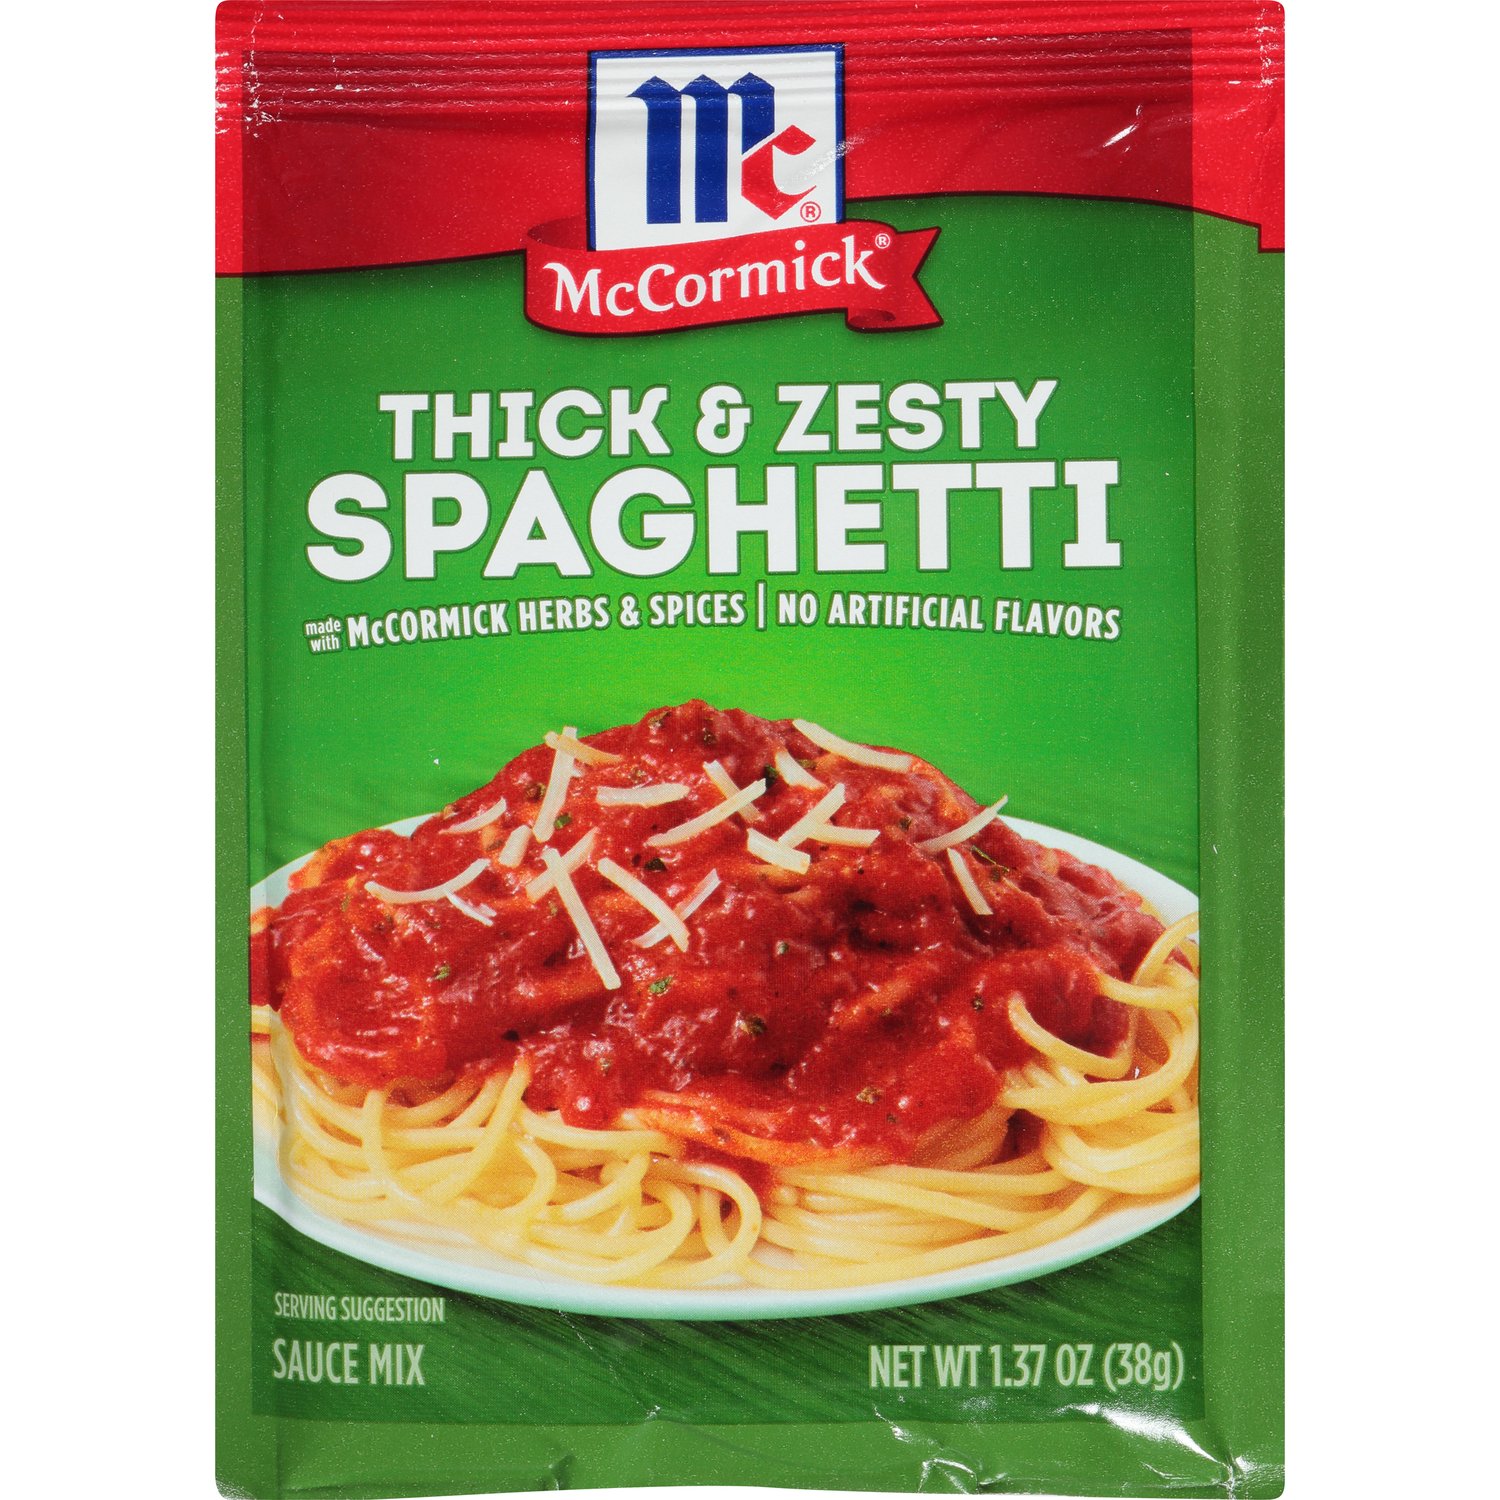 McCormick's Spaghetti Sauce copycat recipe